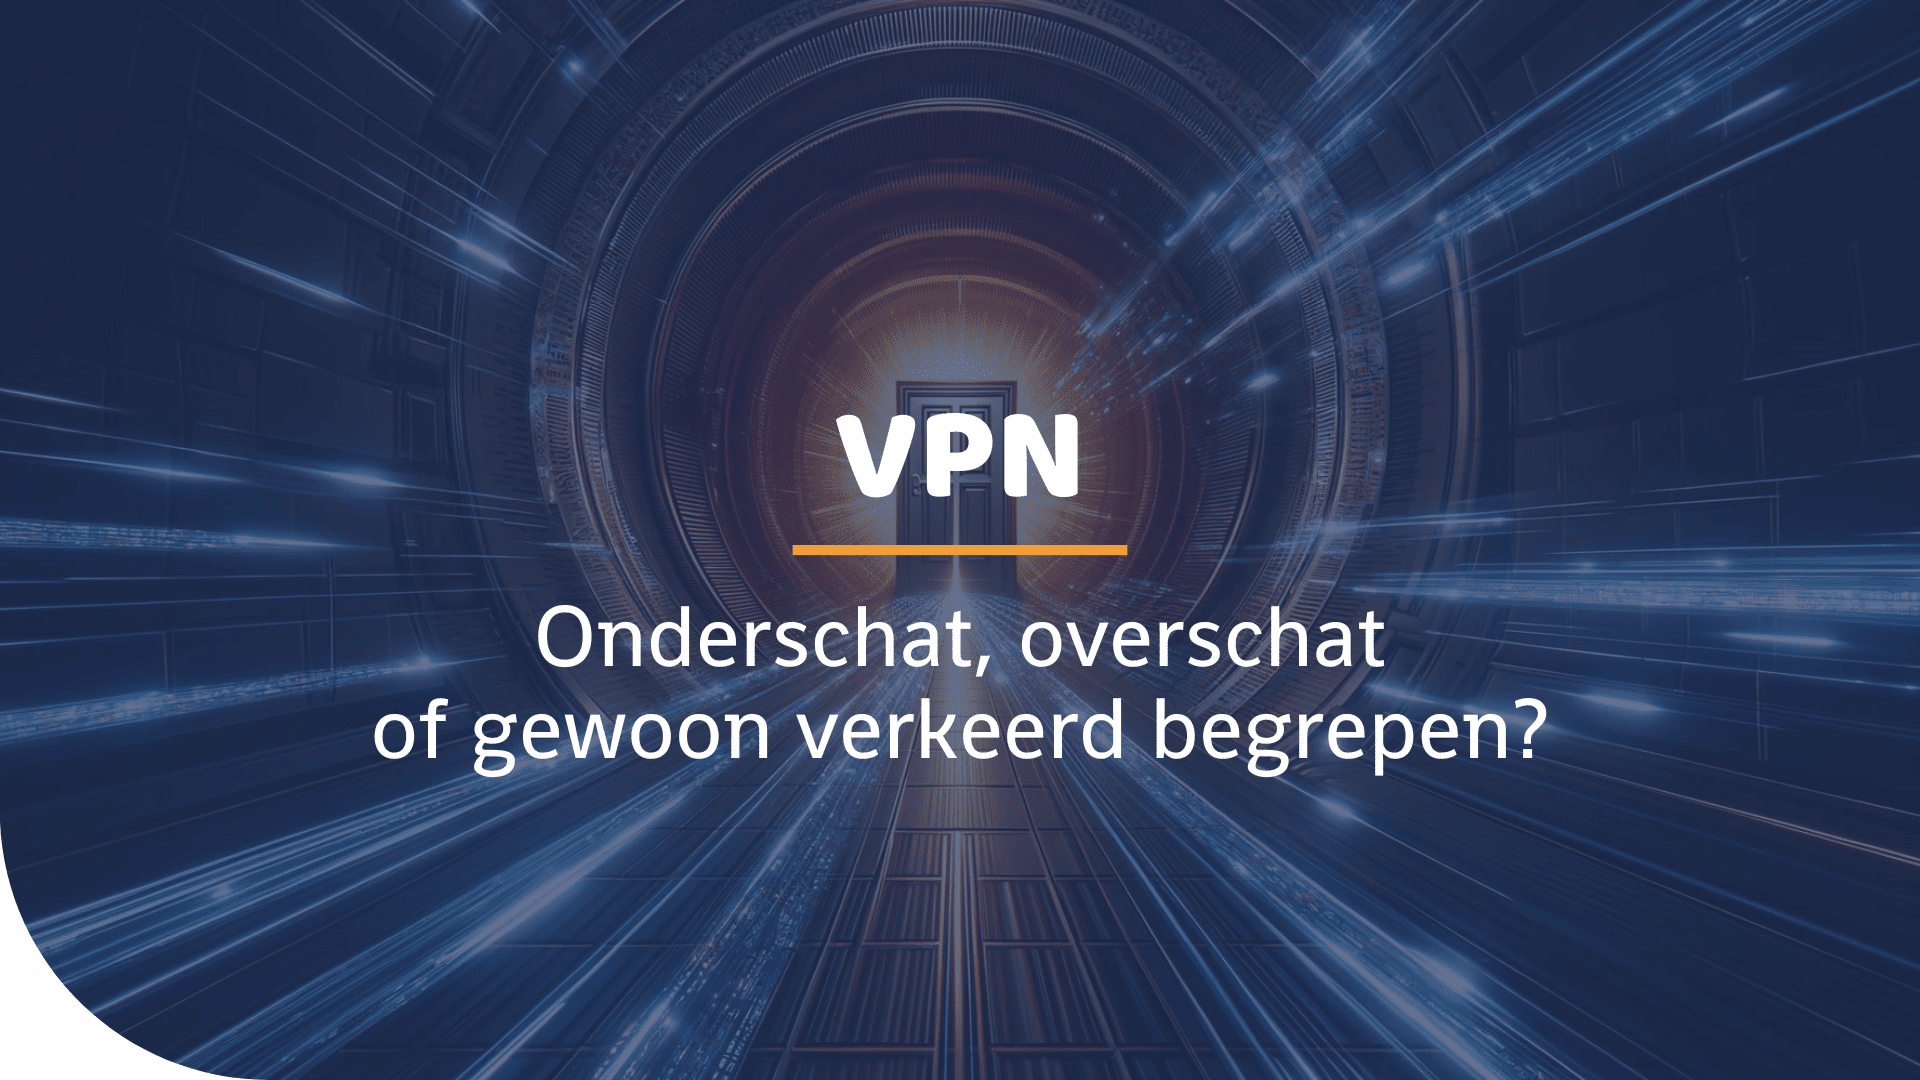 Een digitale tunnel die leidt naar een deur met in de voorgrond de tekst: VPN: onderschat, overschat of gewoon verkeerd begrepen?